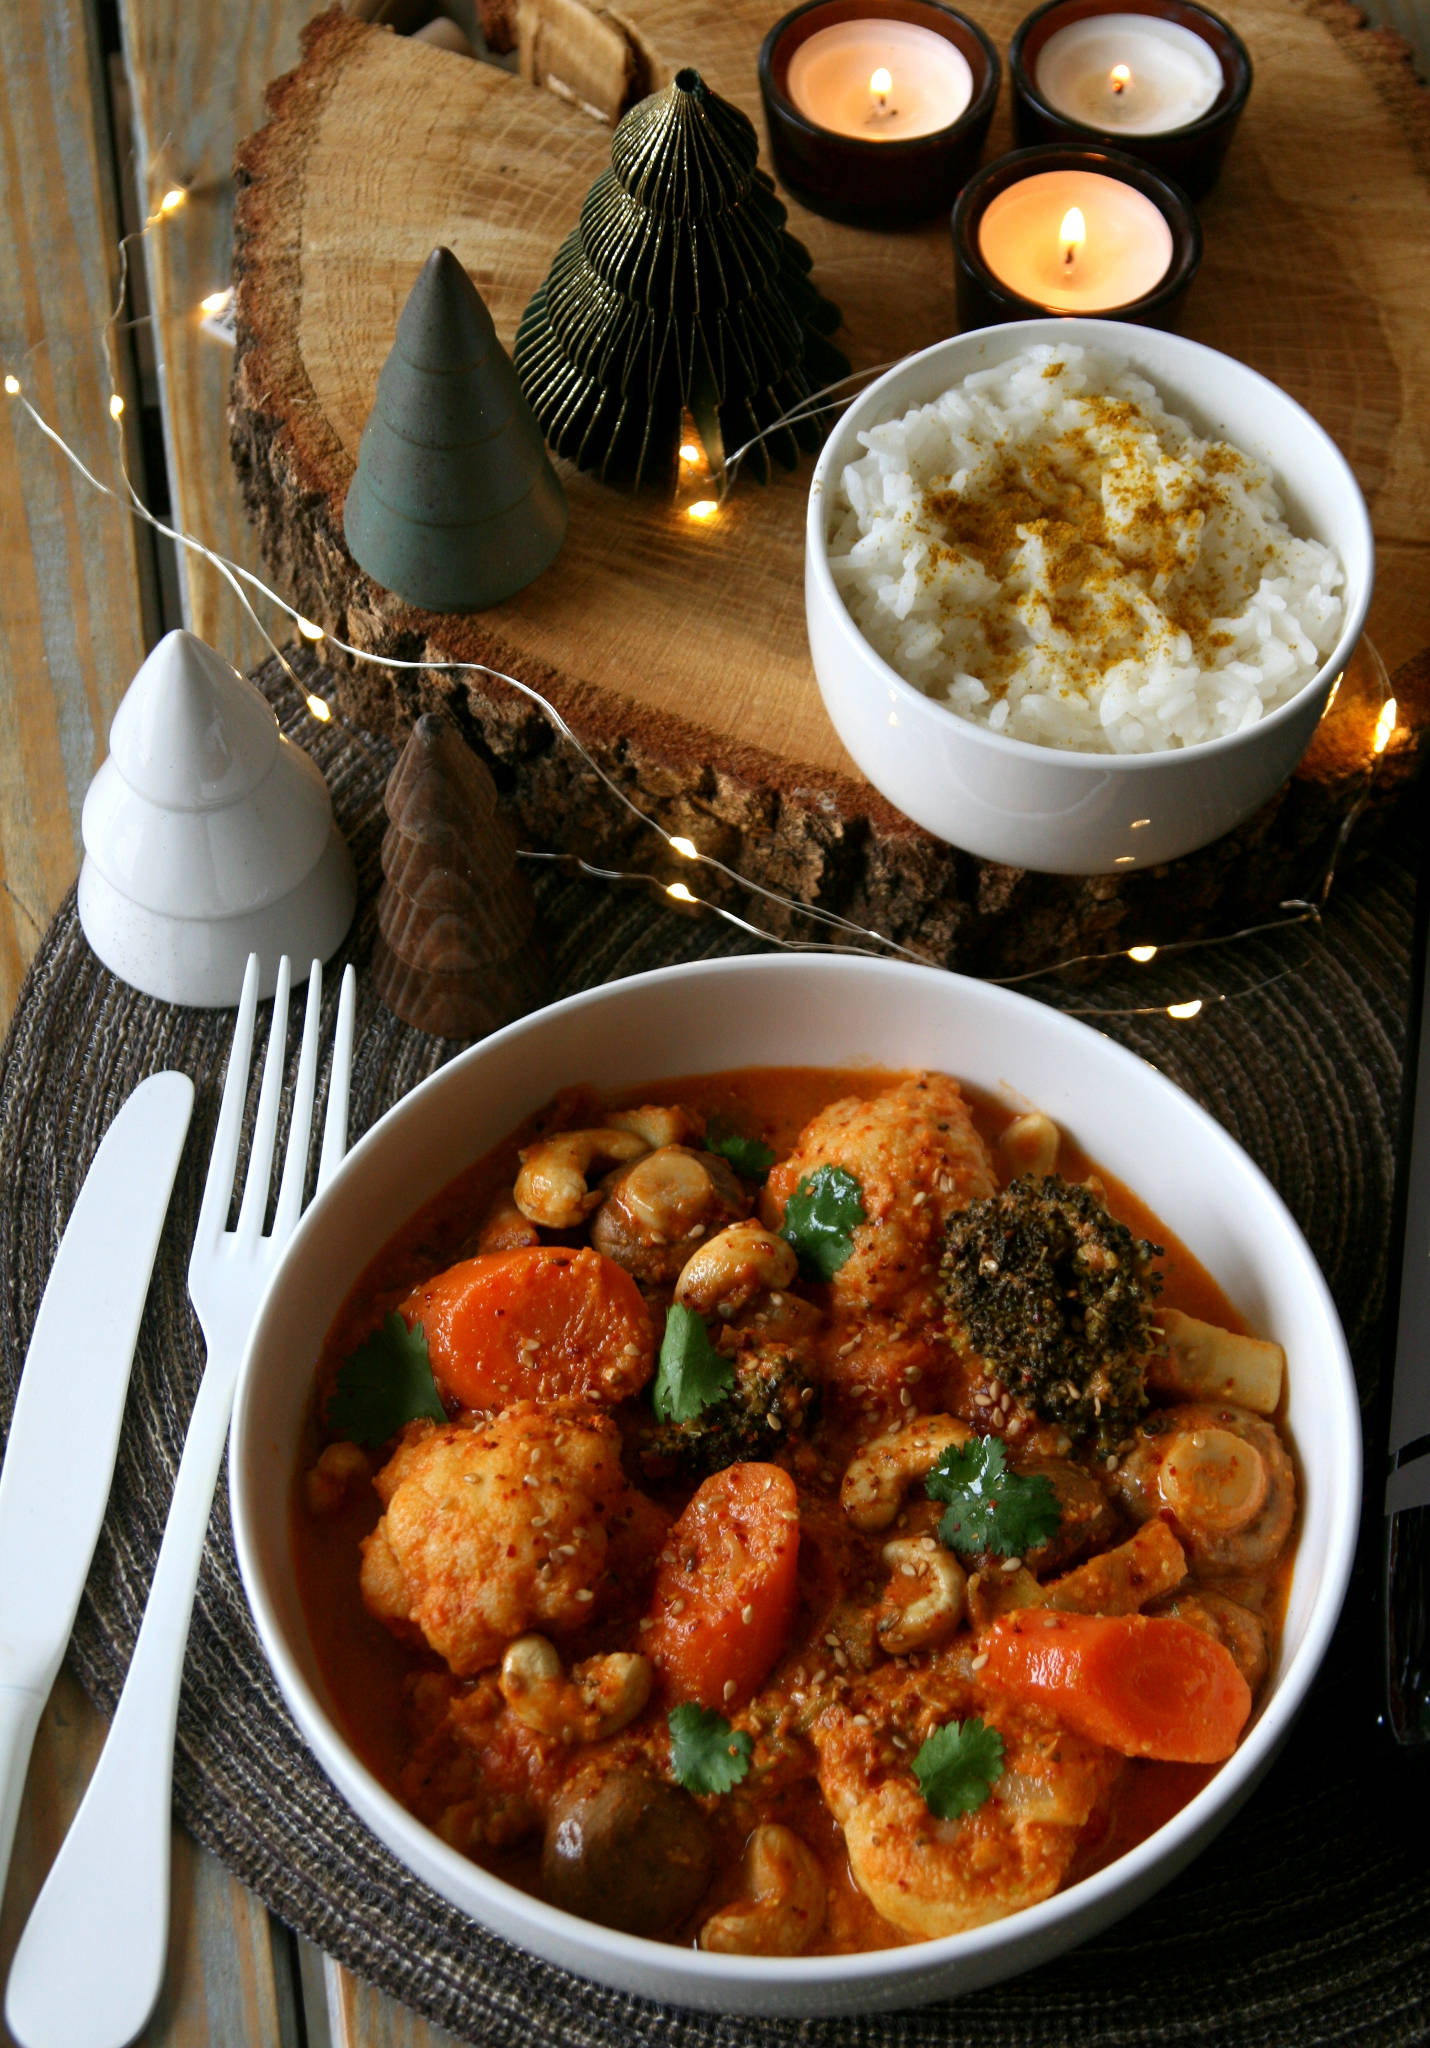 Curry végétarien, Château Bonnet Réserve rouge 2016